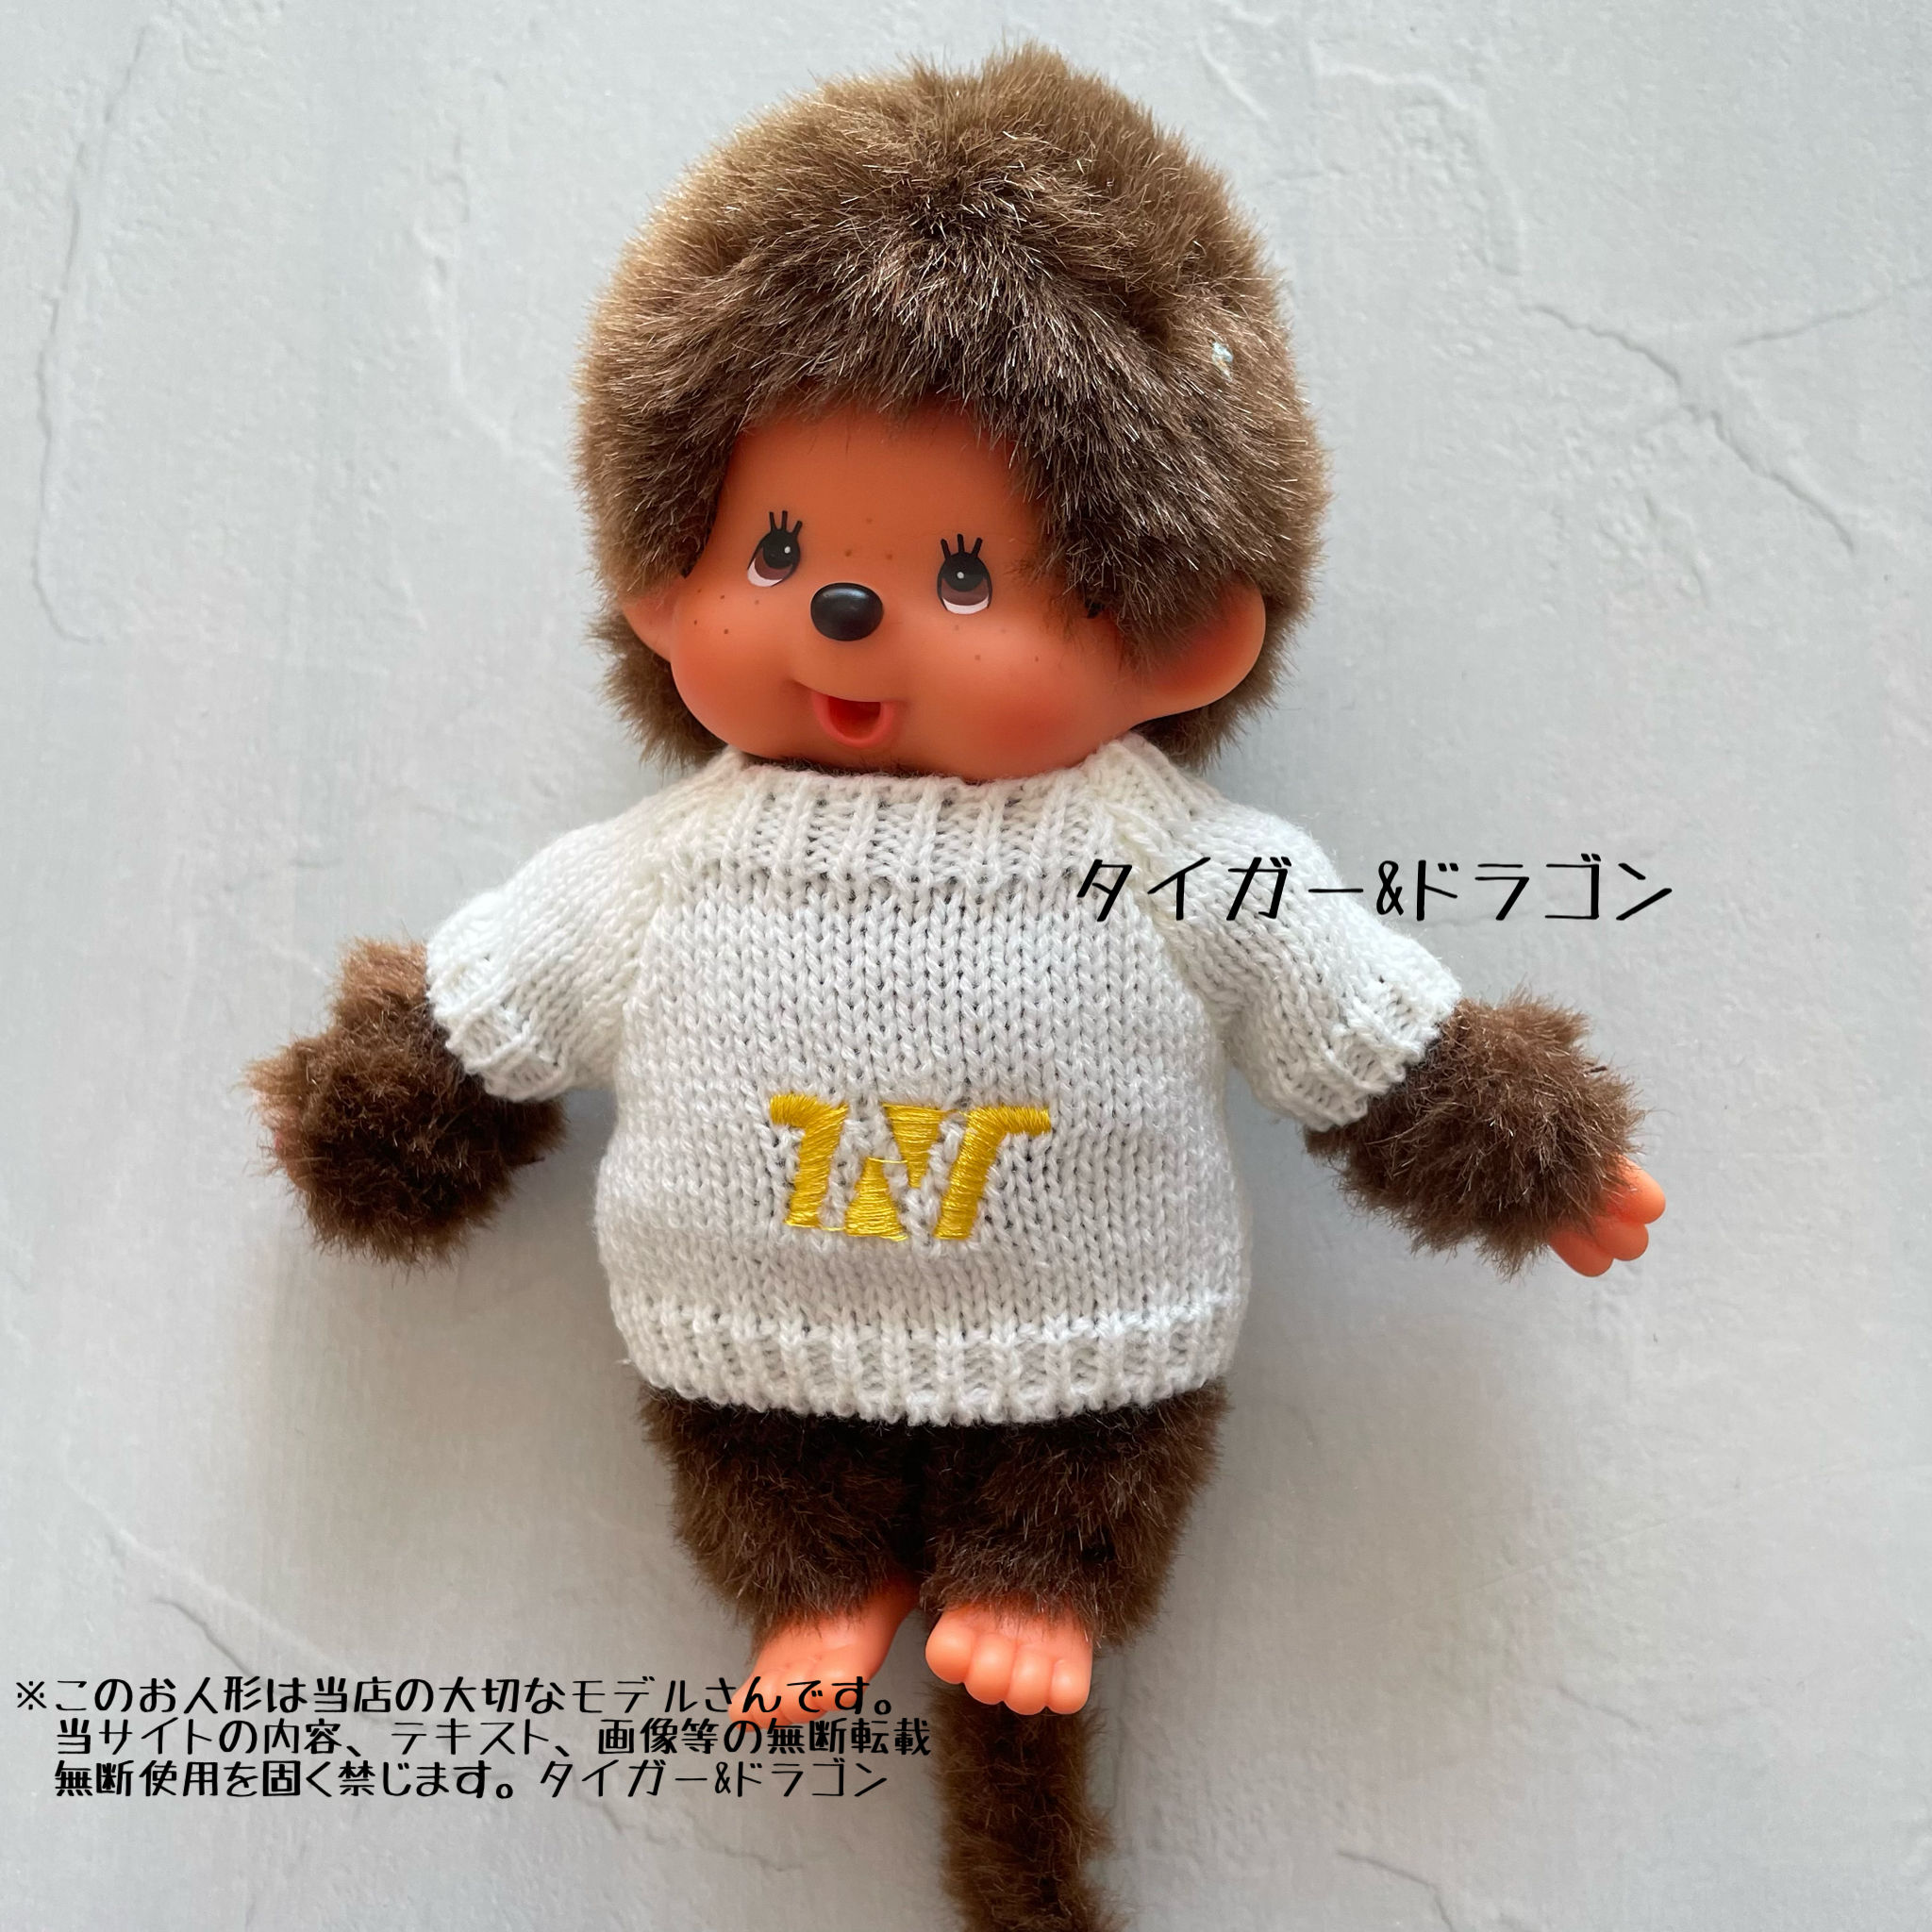 monchichiS размер простой белый свитер мягкая игрушка вязаный свитер .... кукла одежда 